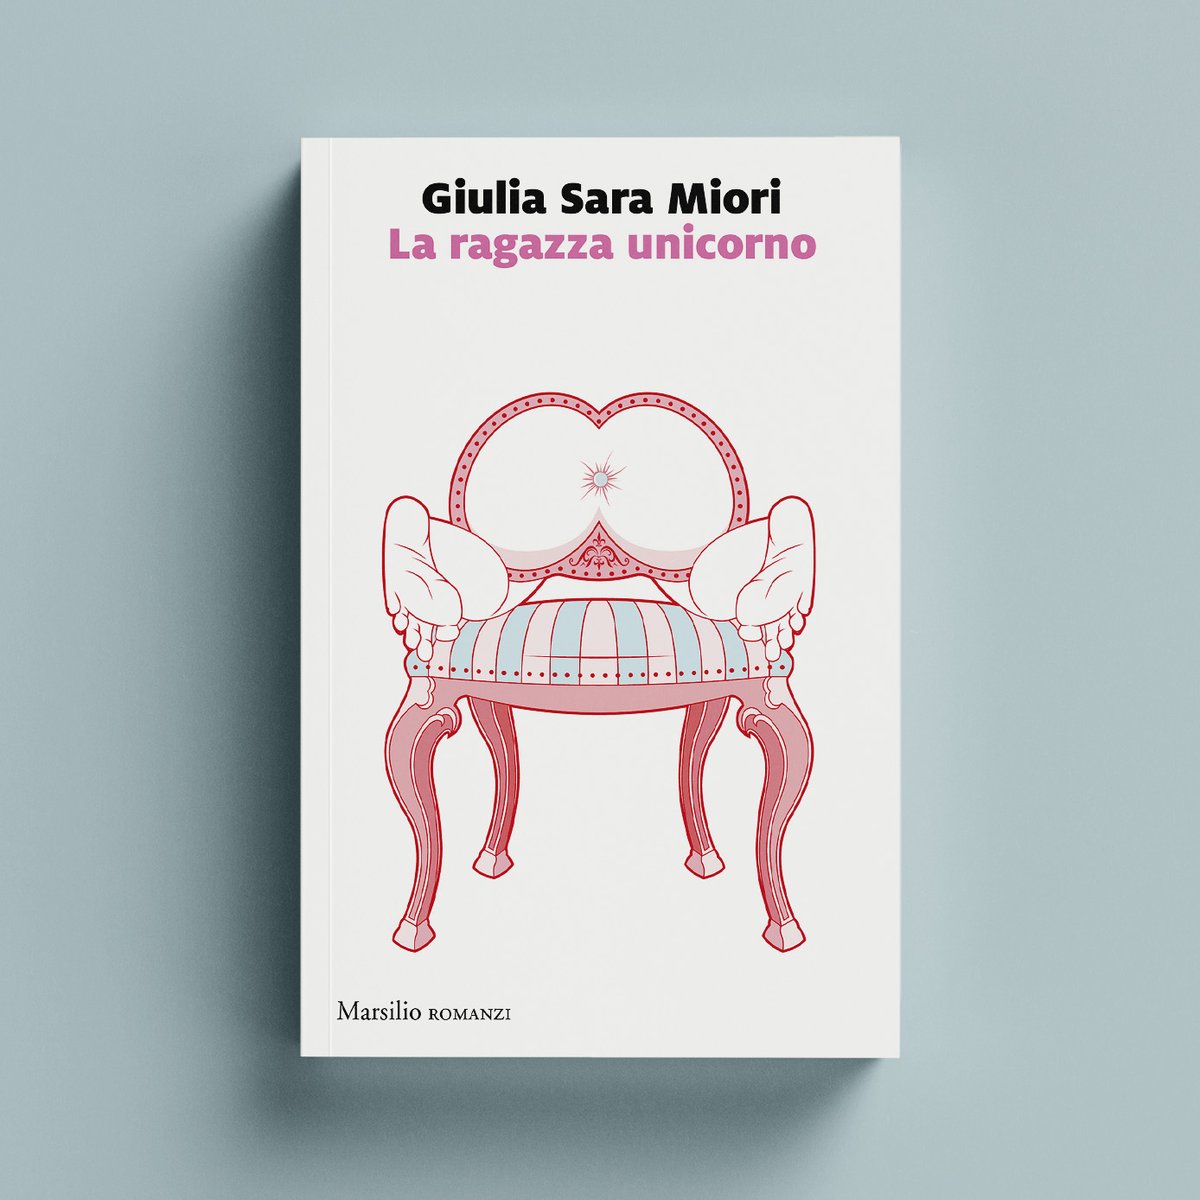 ✍️ Sara Giulia Miori 📖 La ragazza unicorno Da oggi in libreria! 🔗marsilioeditori.it/libri/scheda-l… #Marsilio #romanzi #LaRagazzaUnicorno #GiuliaSaraMiori